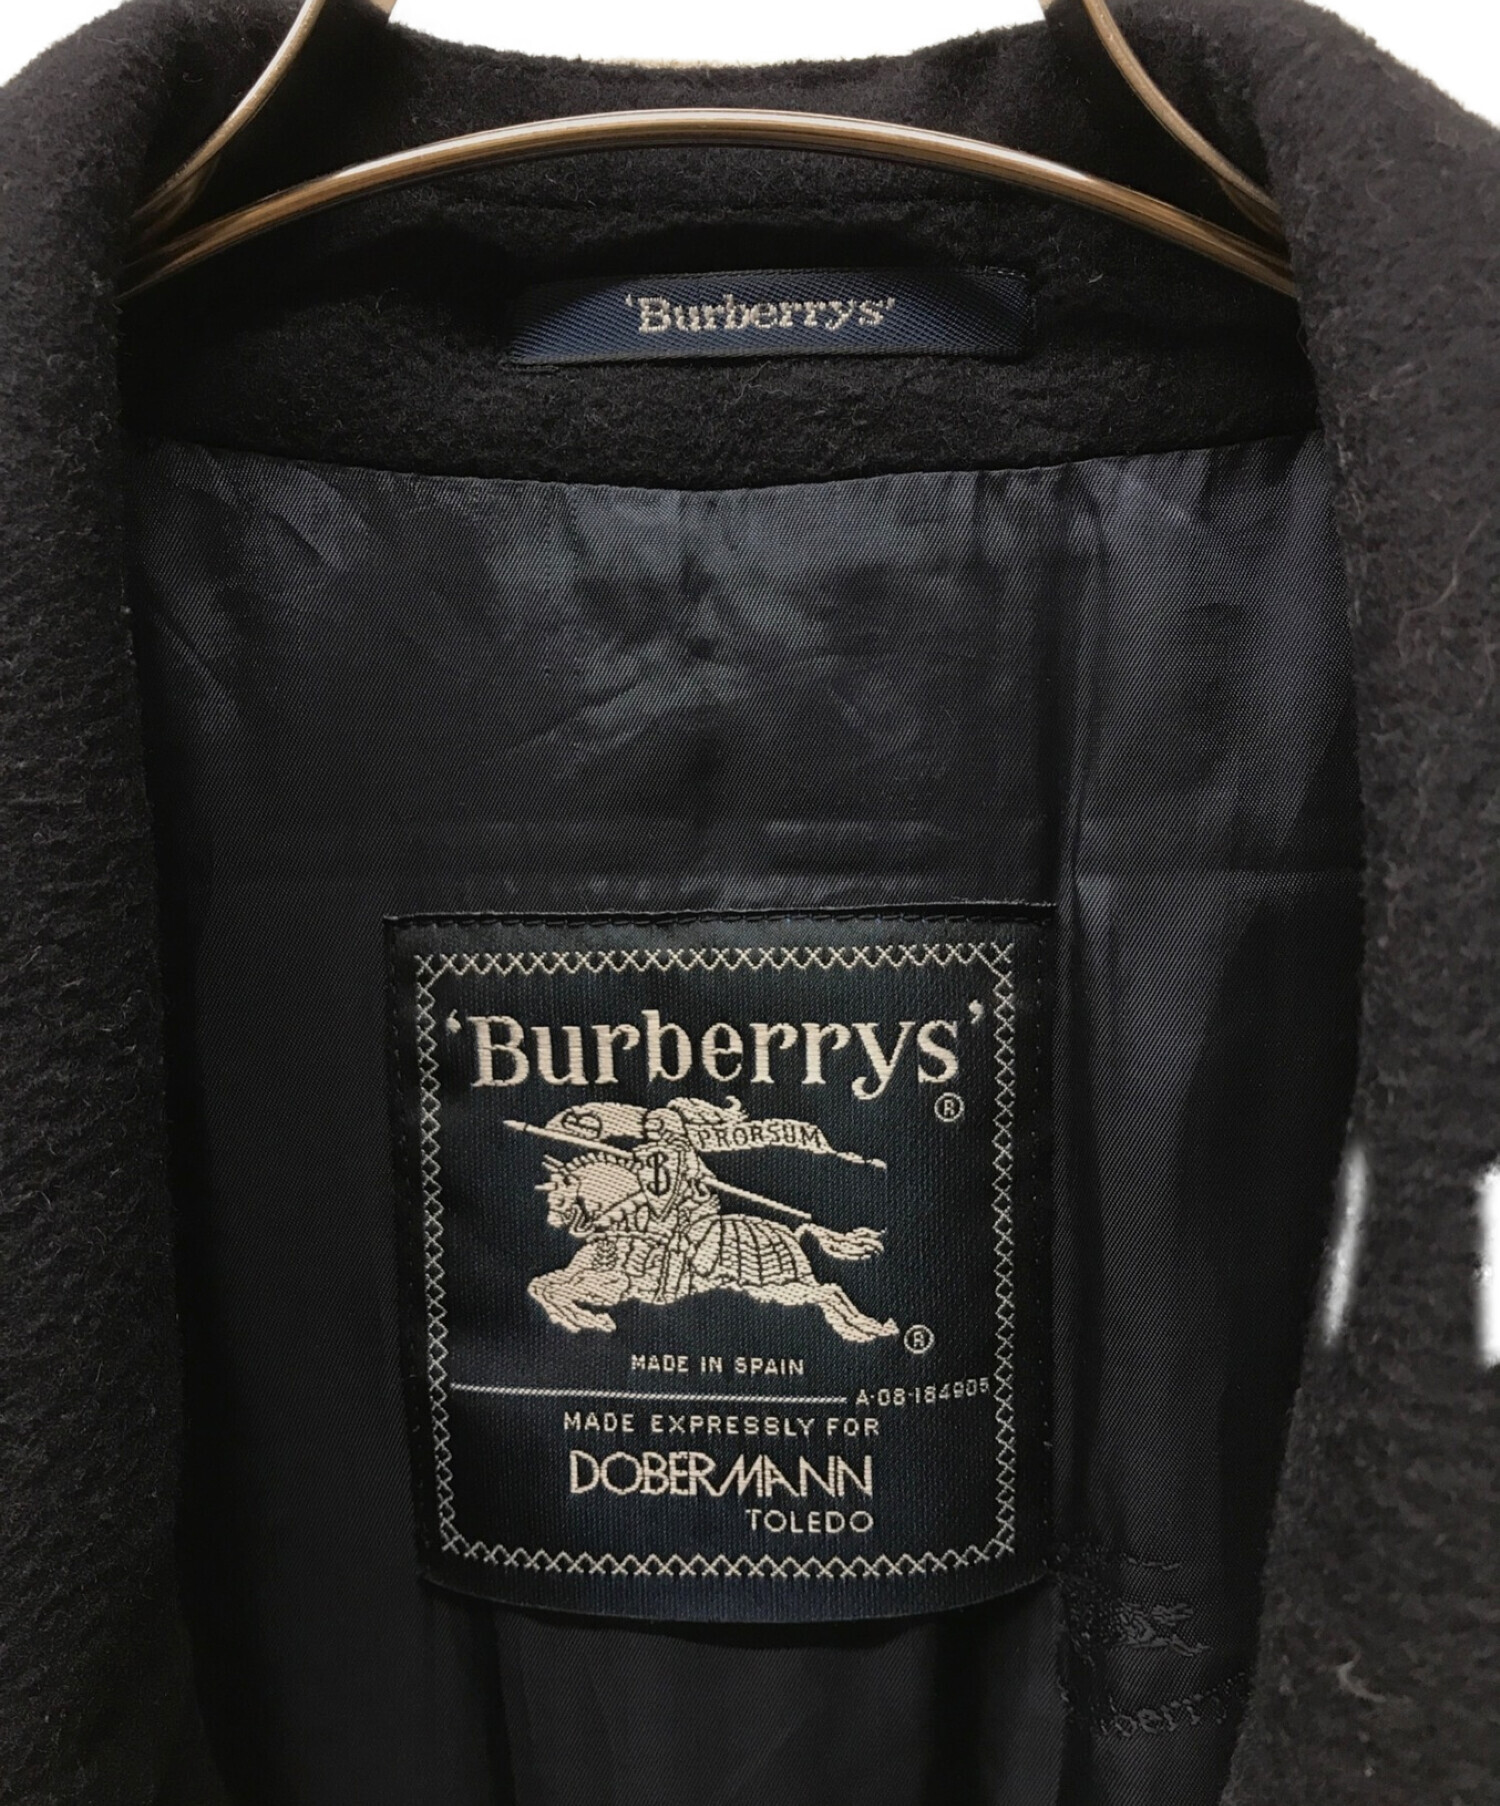 中古・古着通販】Burberry's (バーバリーズ) ウールステンカラーコート 